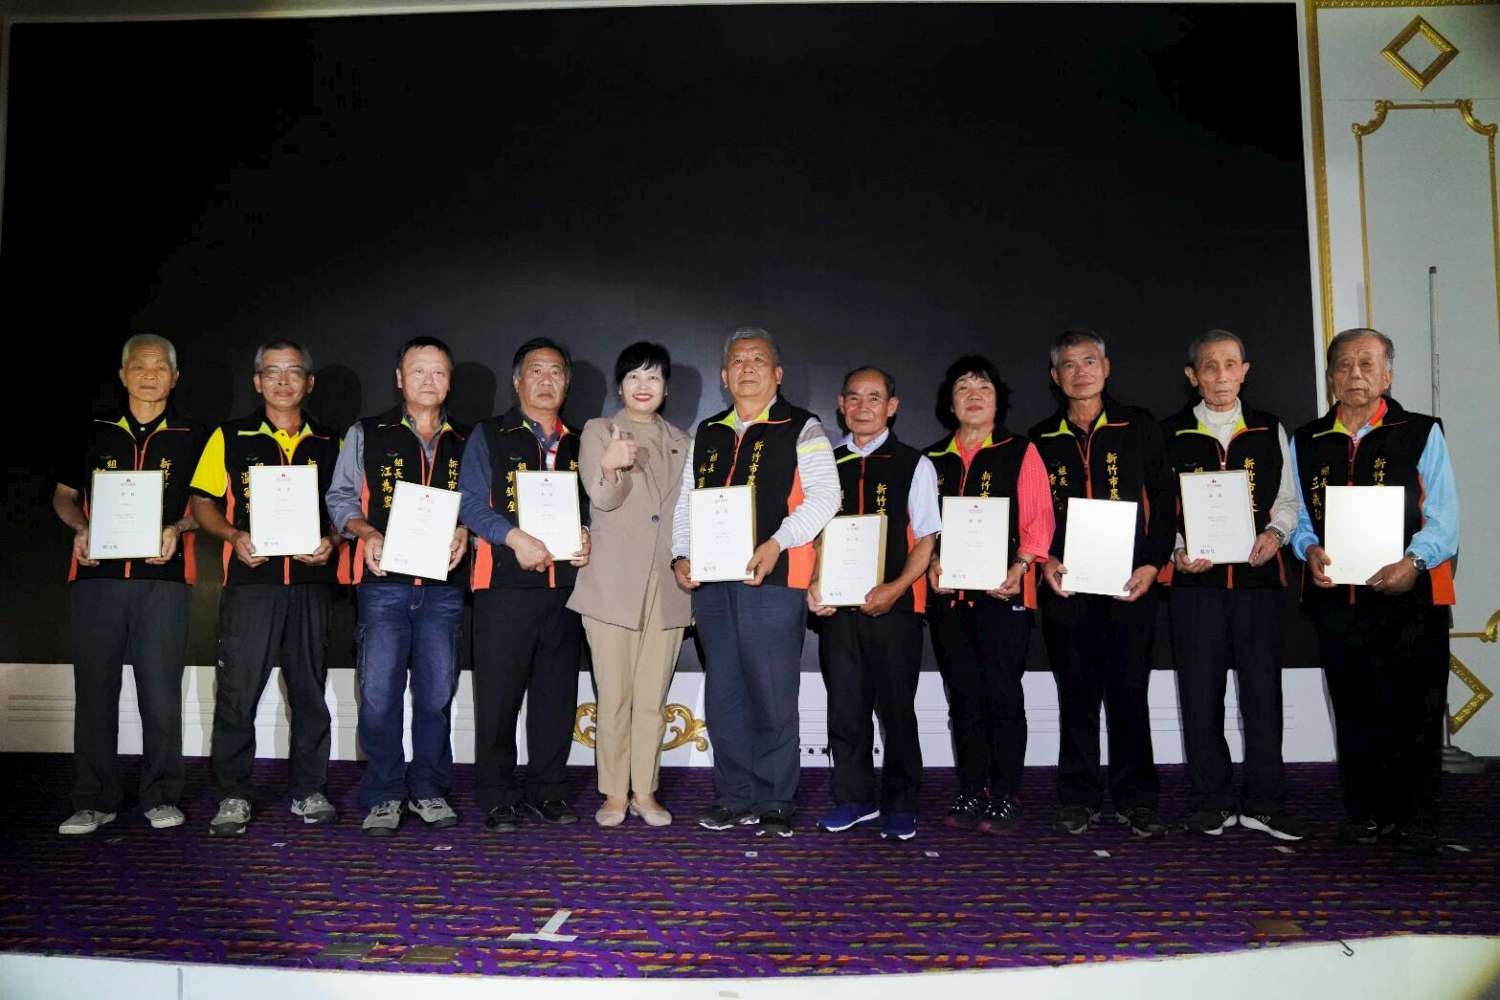 圖六、新竹市副市長沈慧虹贈獎牌予新竹市農會農事小組長並合影。